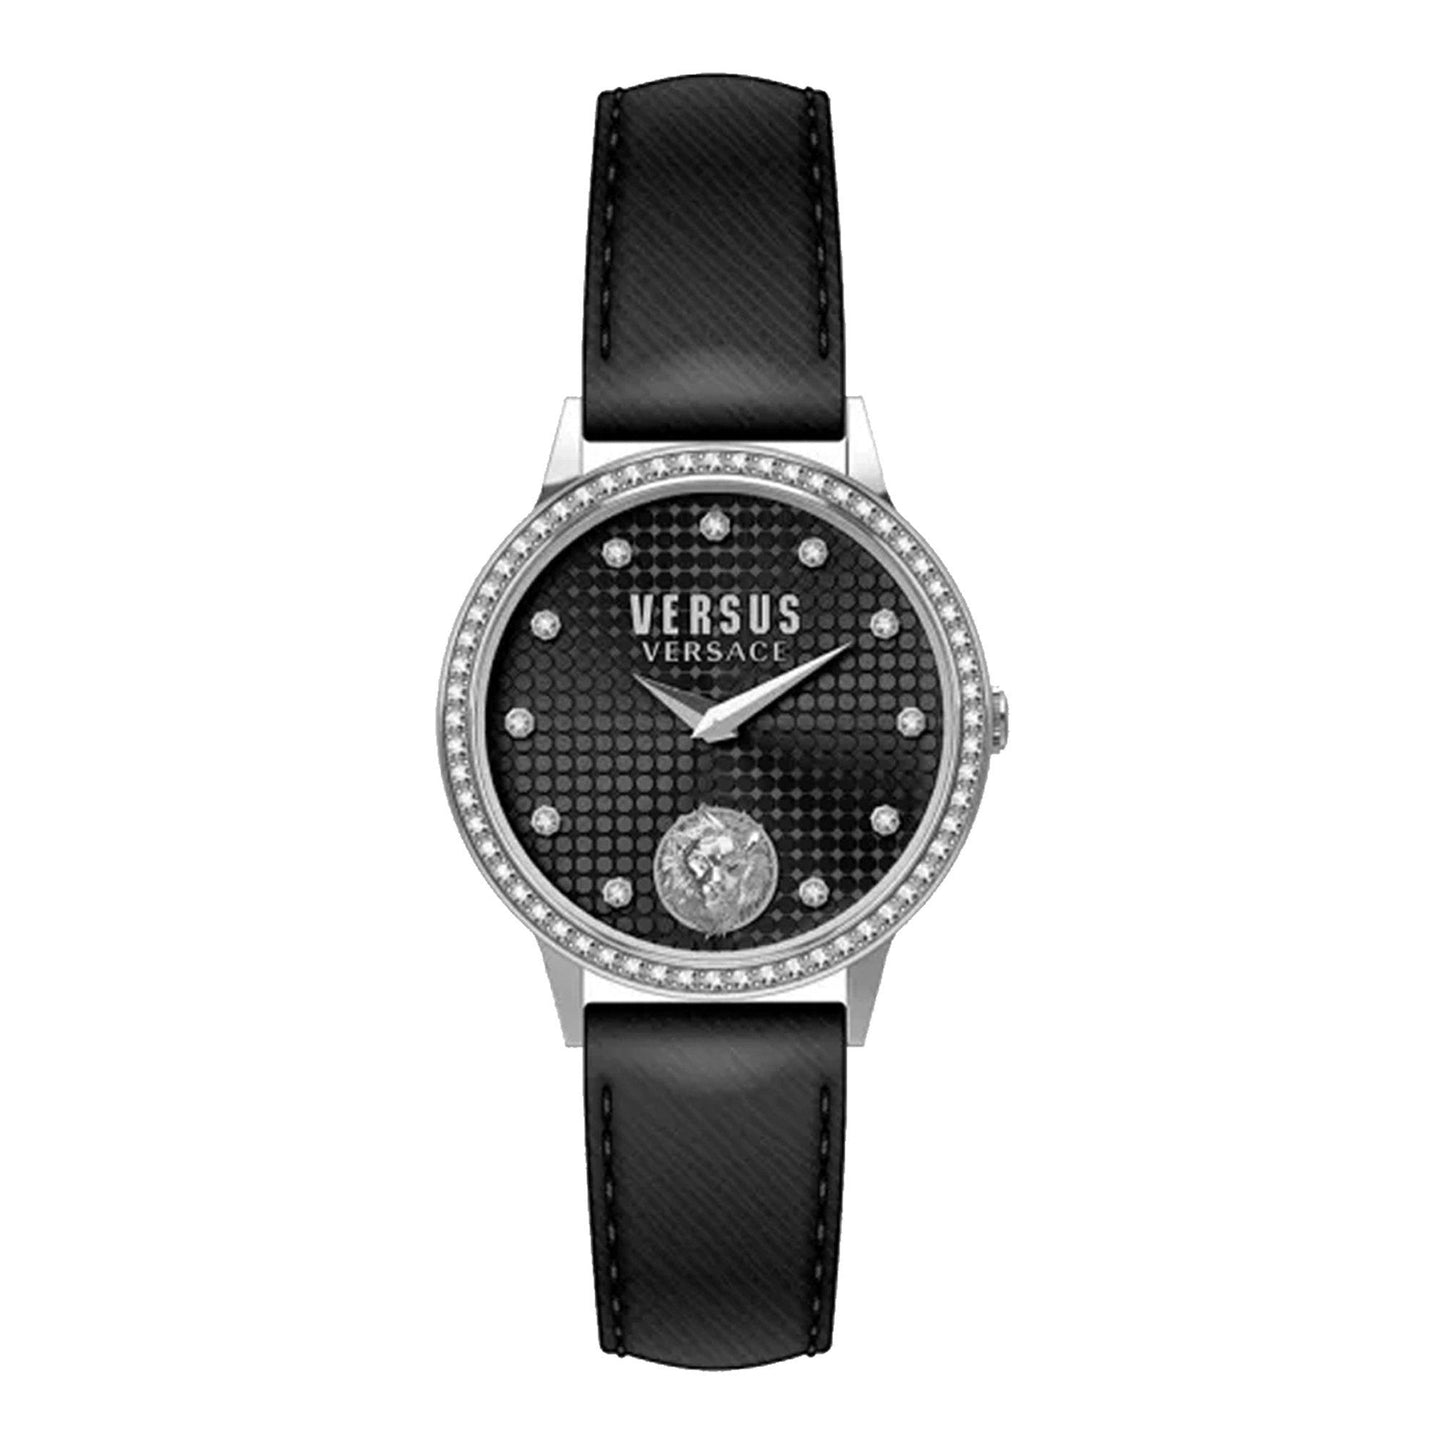 Versus VSP572021 orologio donna al quarzo - Kechiq Concept Boutique